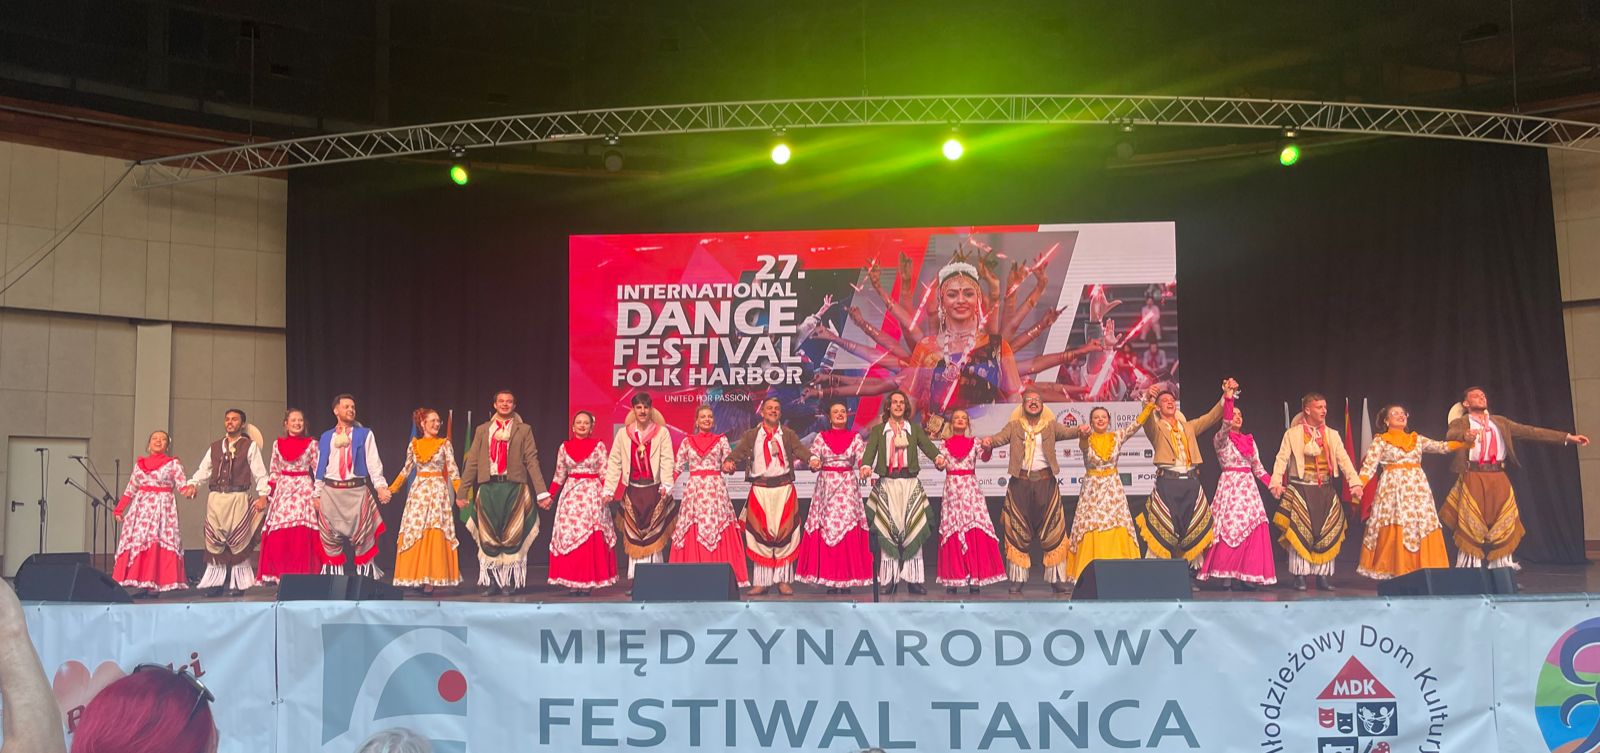 El grupo de artes nativas Anita Garibaldi recibe el premio al grupo más popular en el Festival Internacional de Danza de Polonia |  Revista Forca do Vale